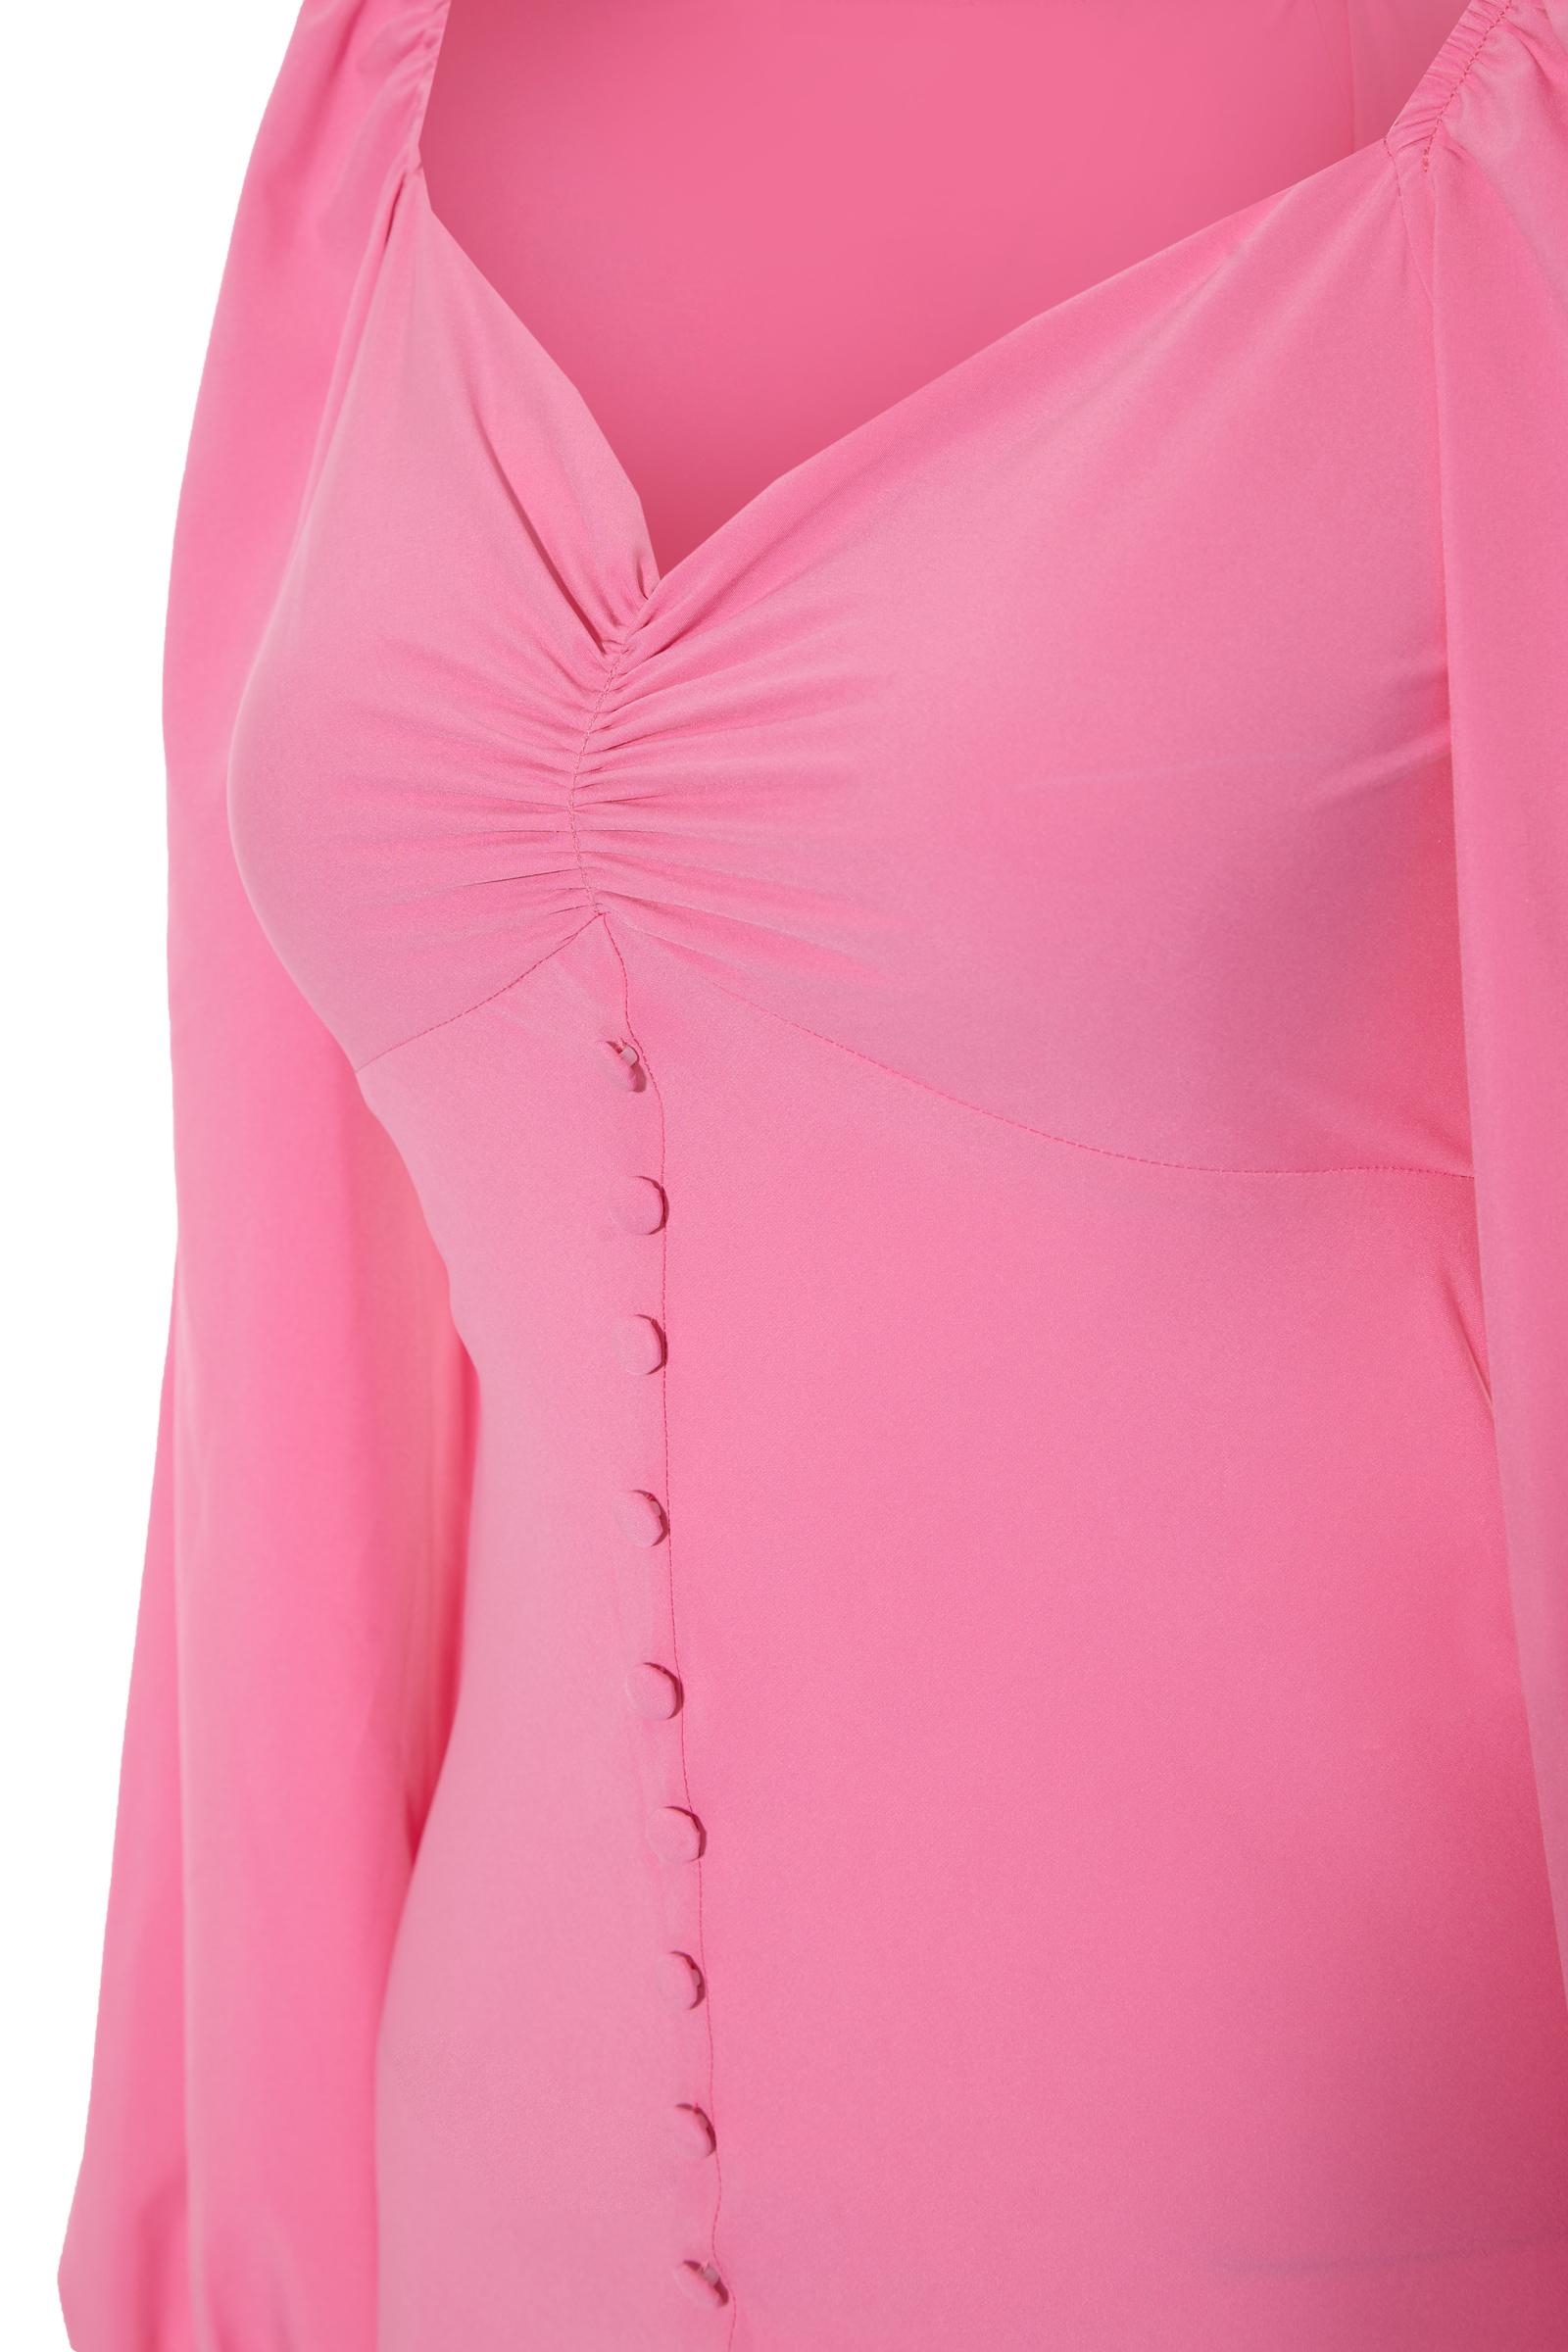 Pink Satin Long Sleeve Maxi Dress